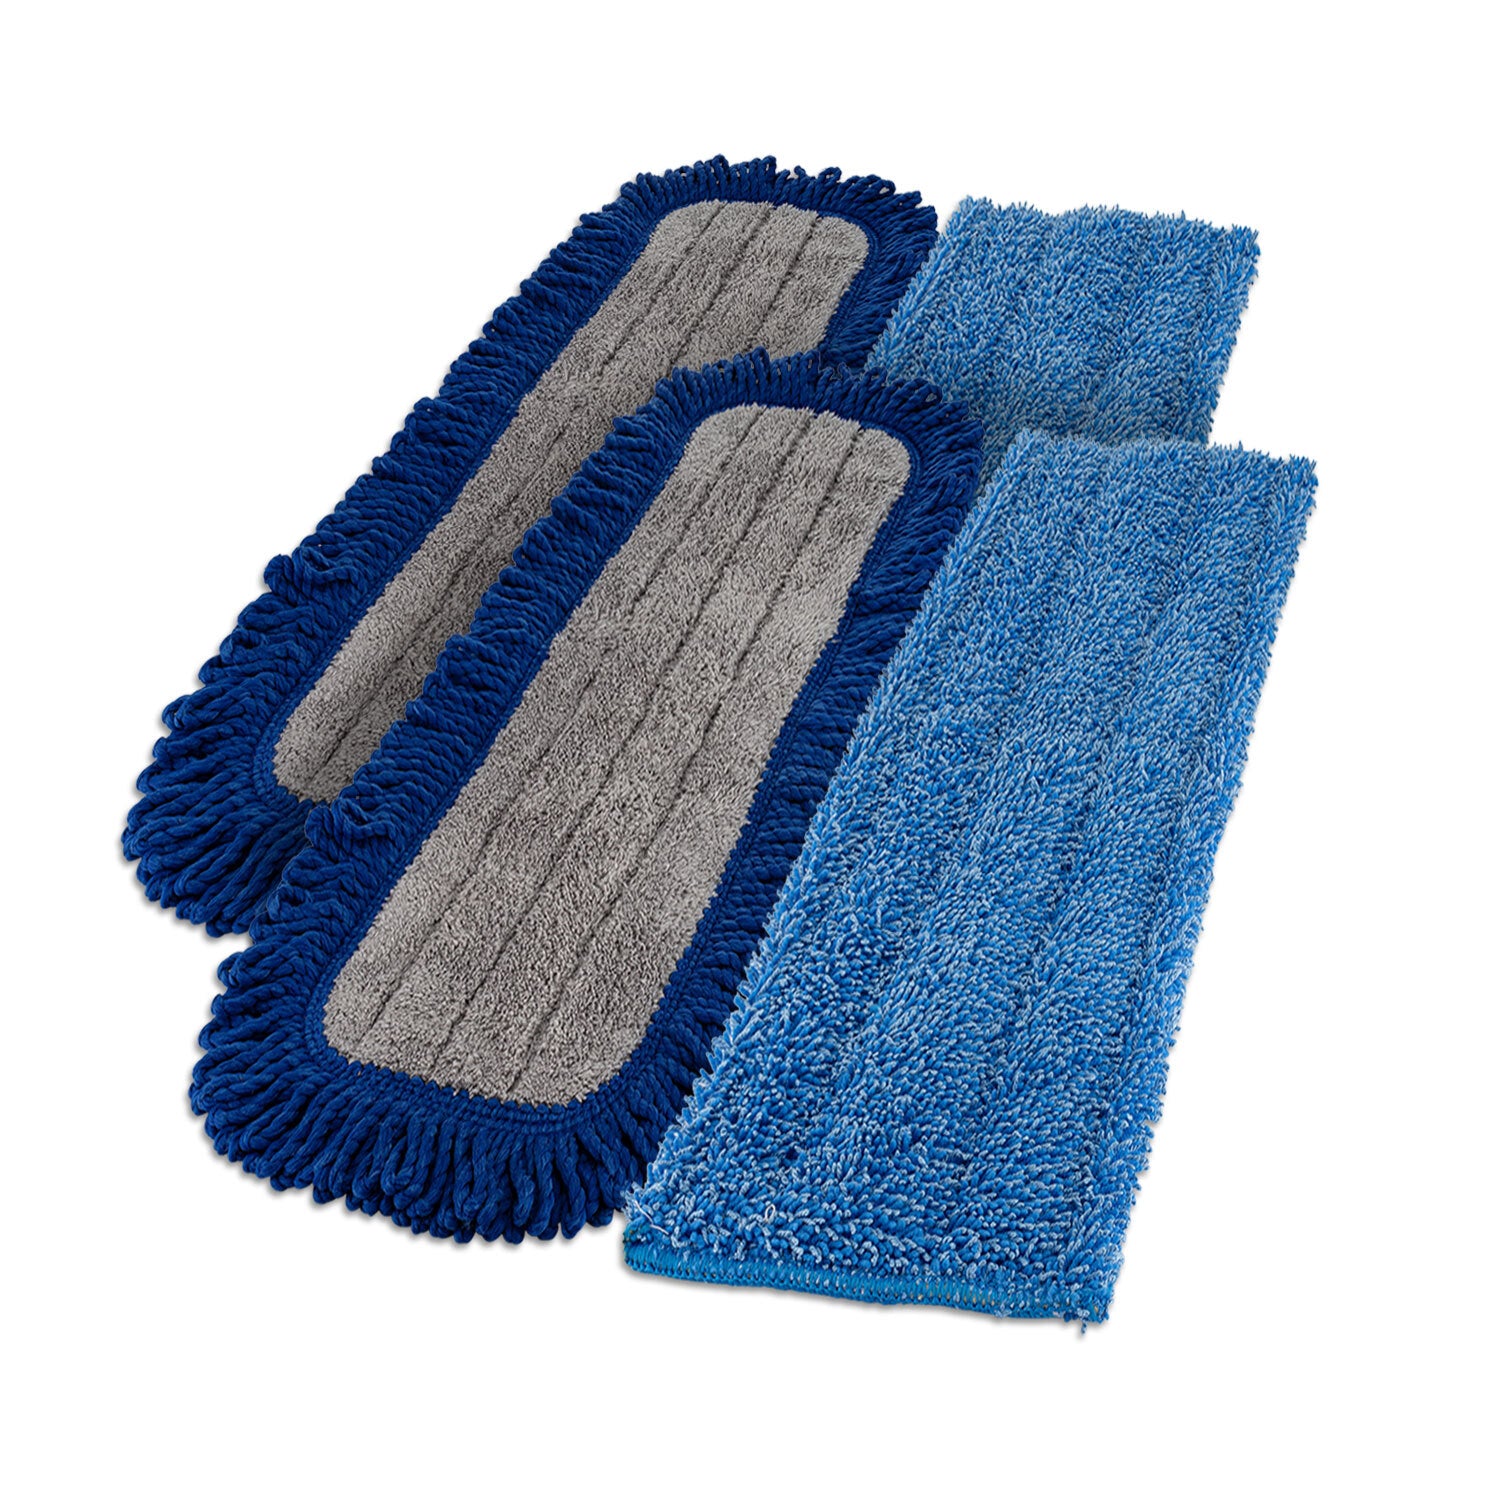 Microfiber Wet/dry Mop